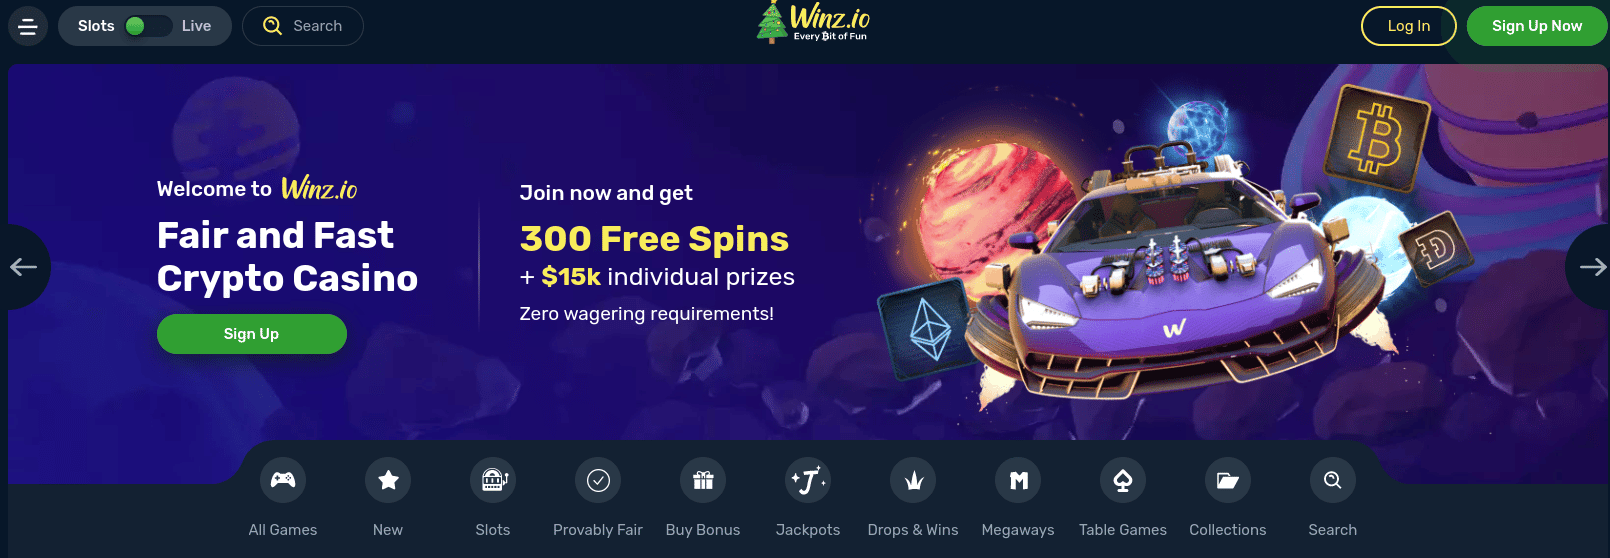 Winz.io - Crypto Casino Philippines